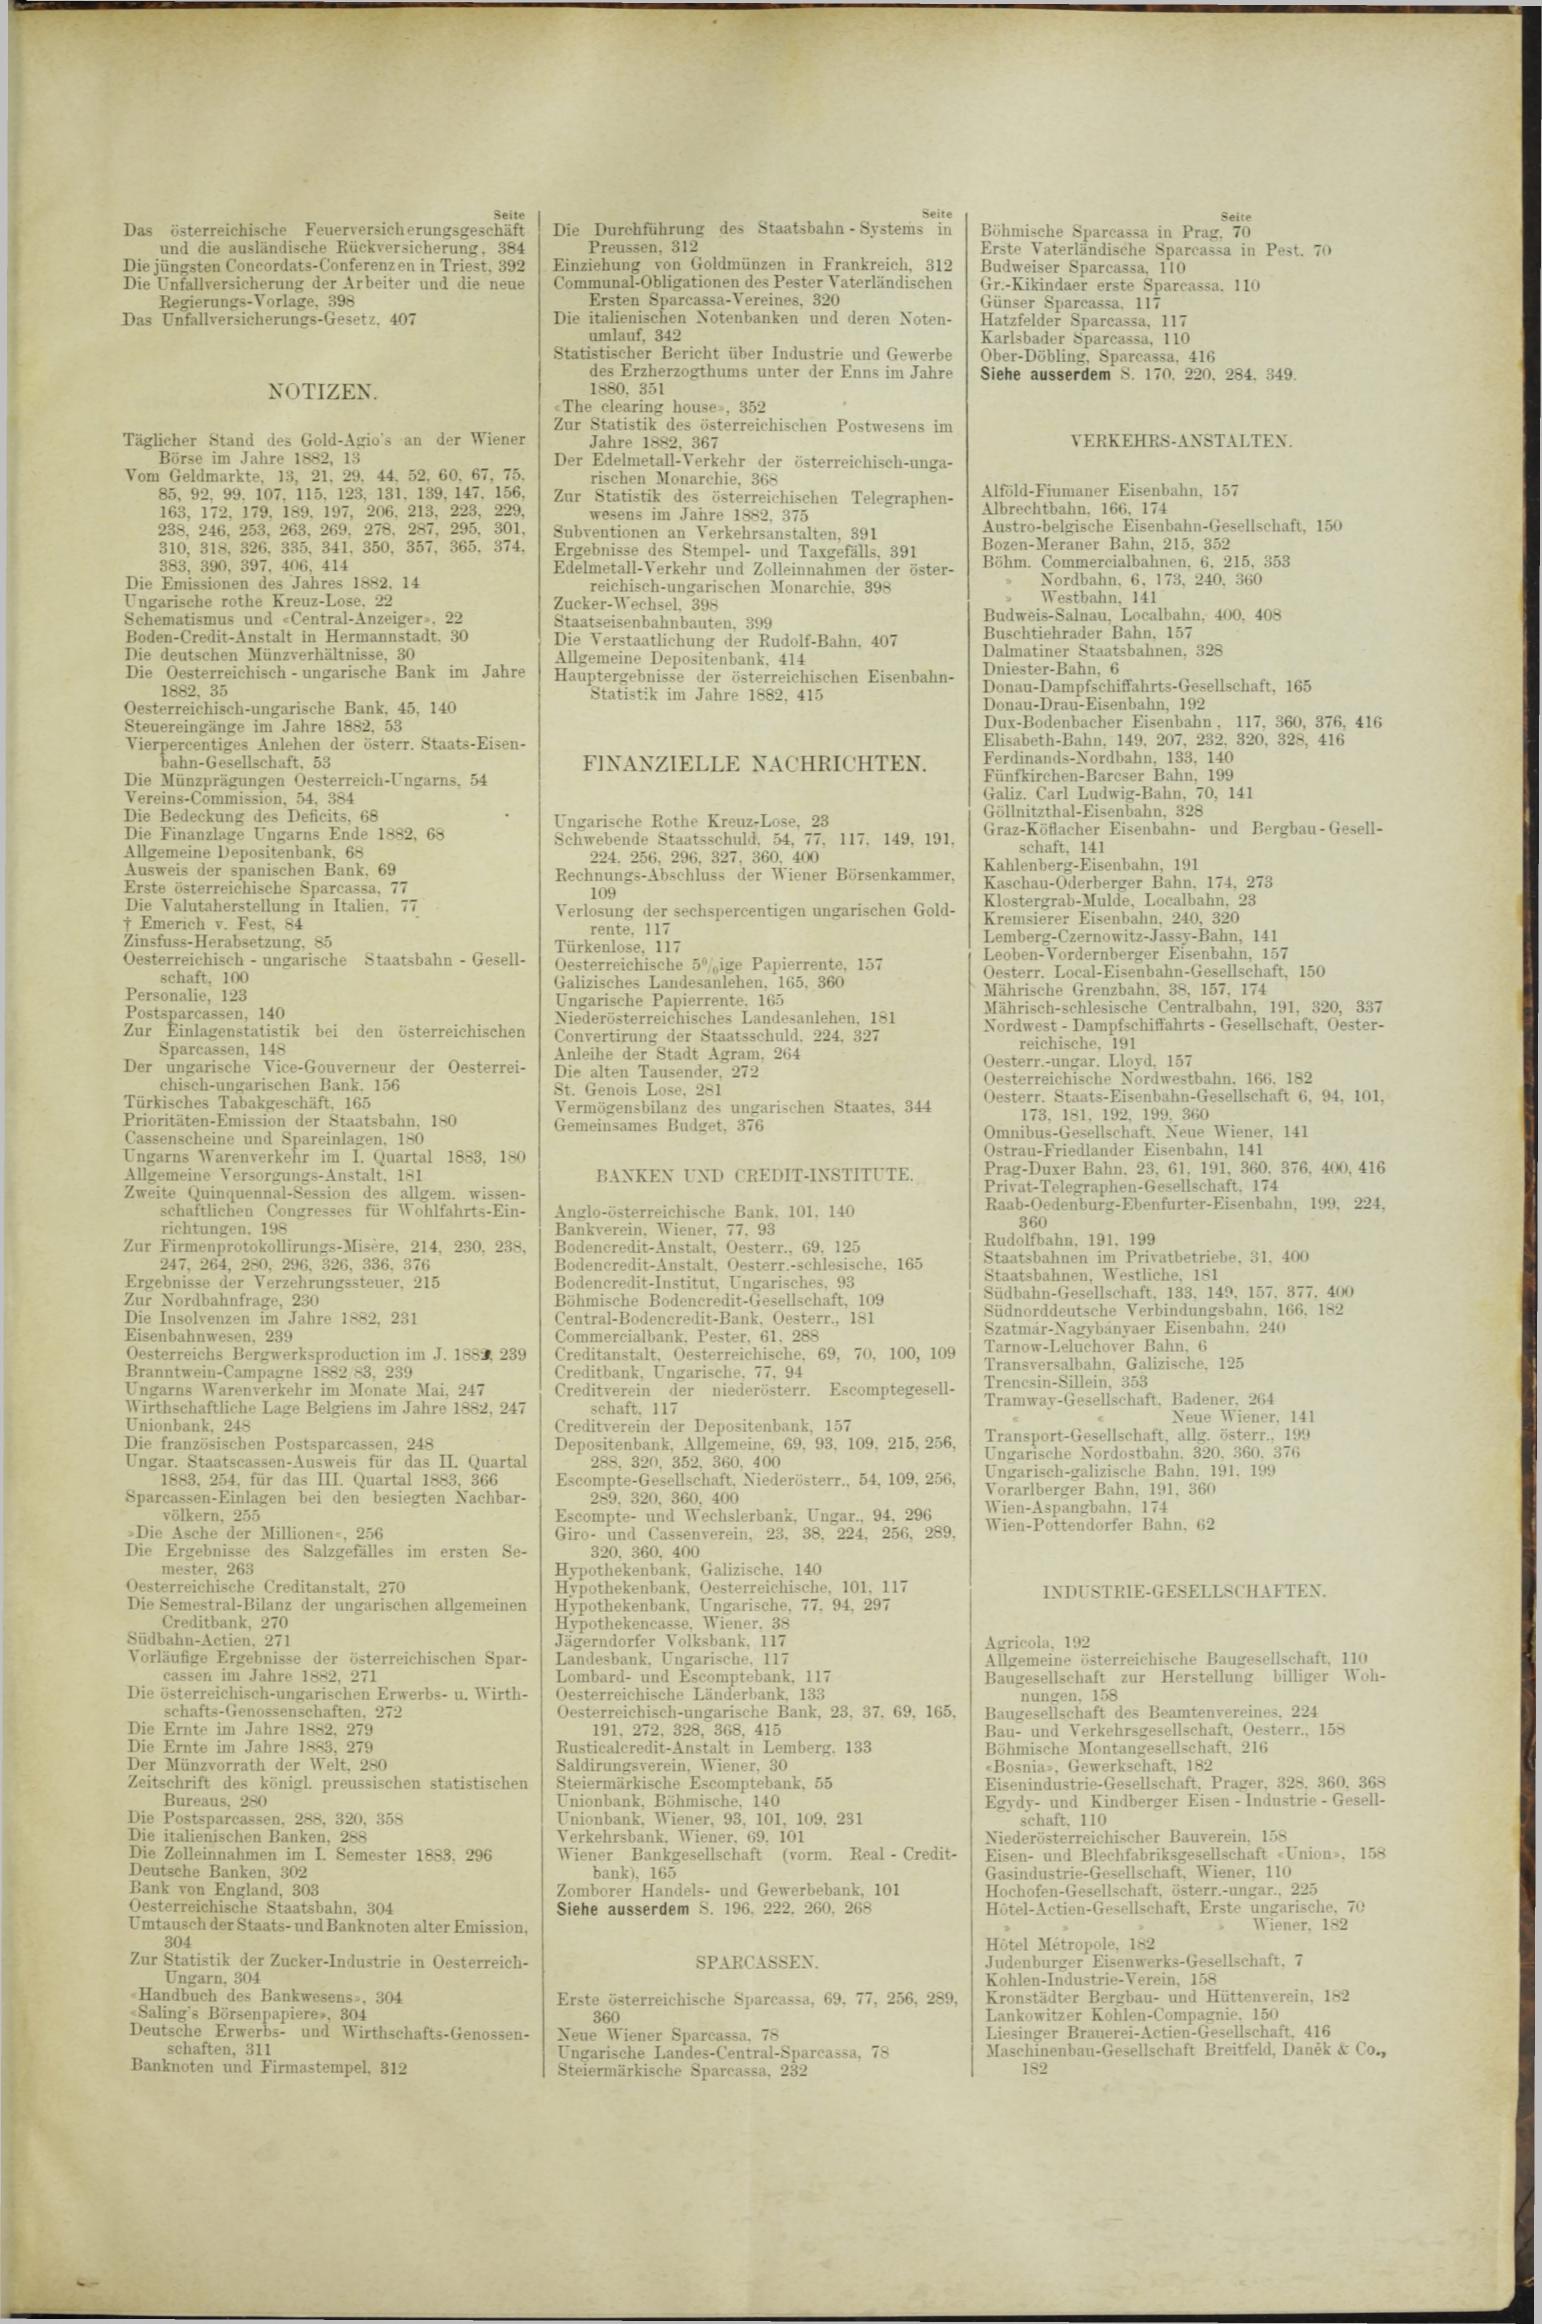 Der Tresor 08.11.1883 - Seite 11